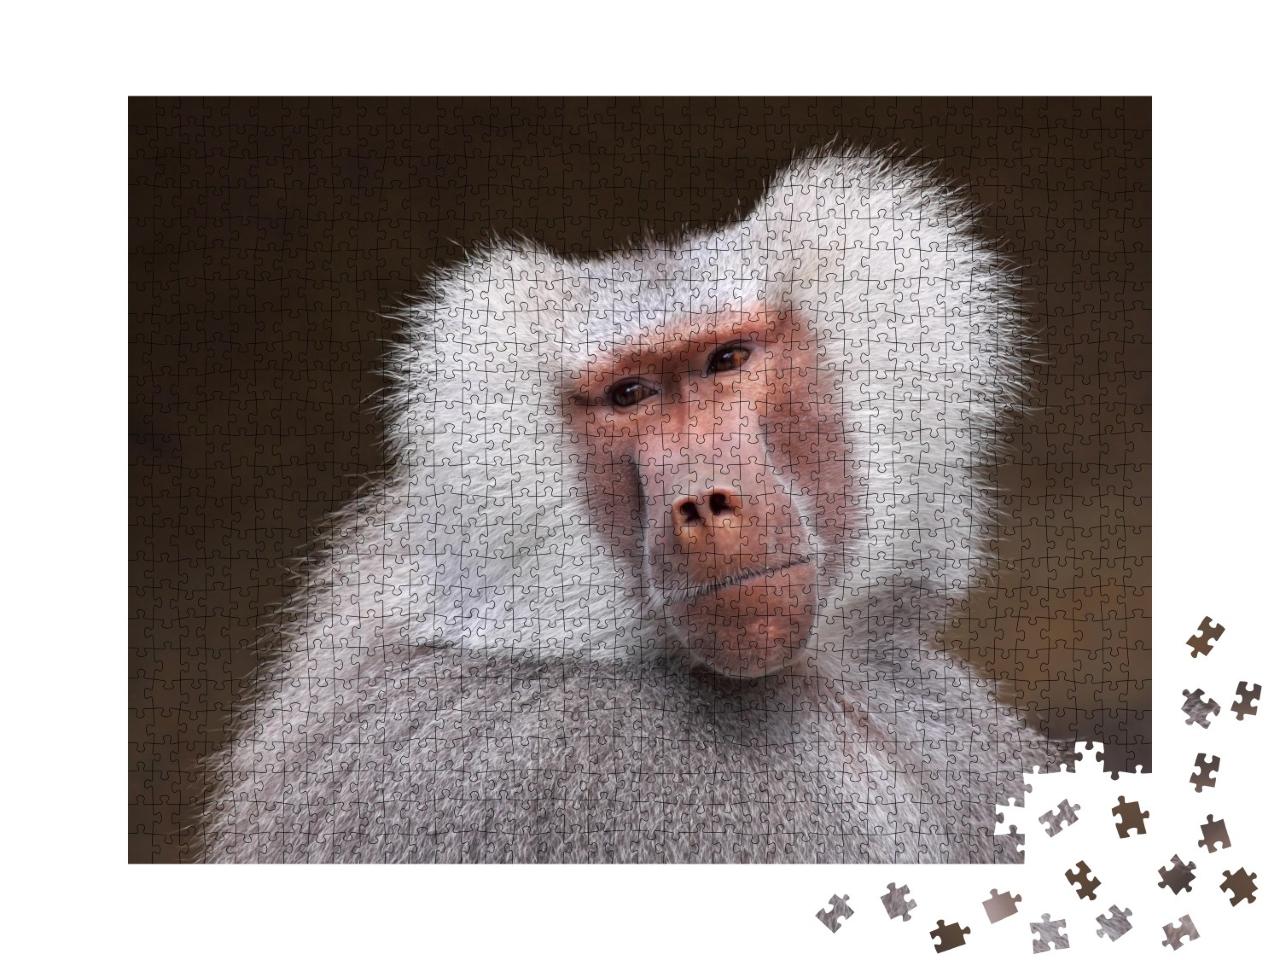 Puzzle de 1000 pièces « Portrait d'un babouin pensif »